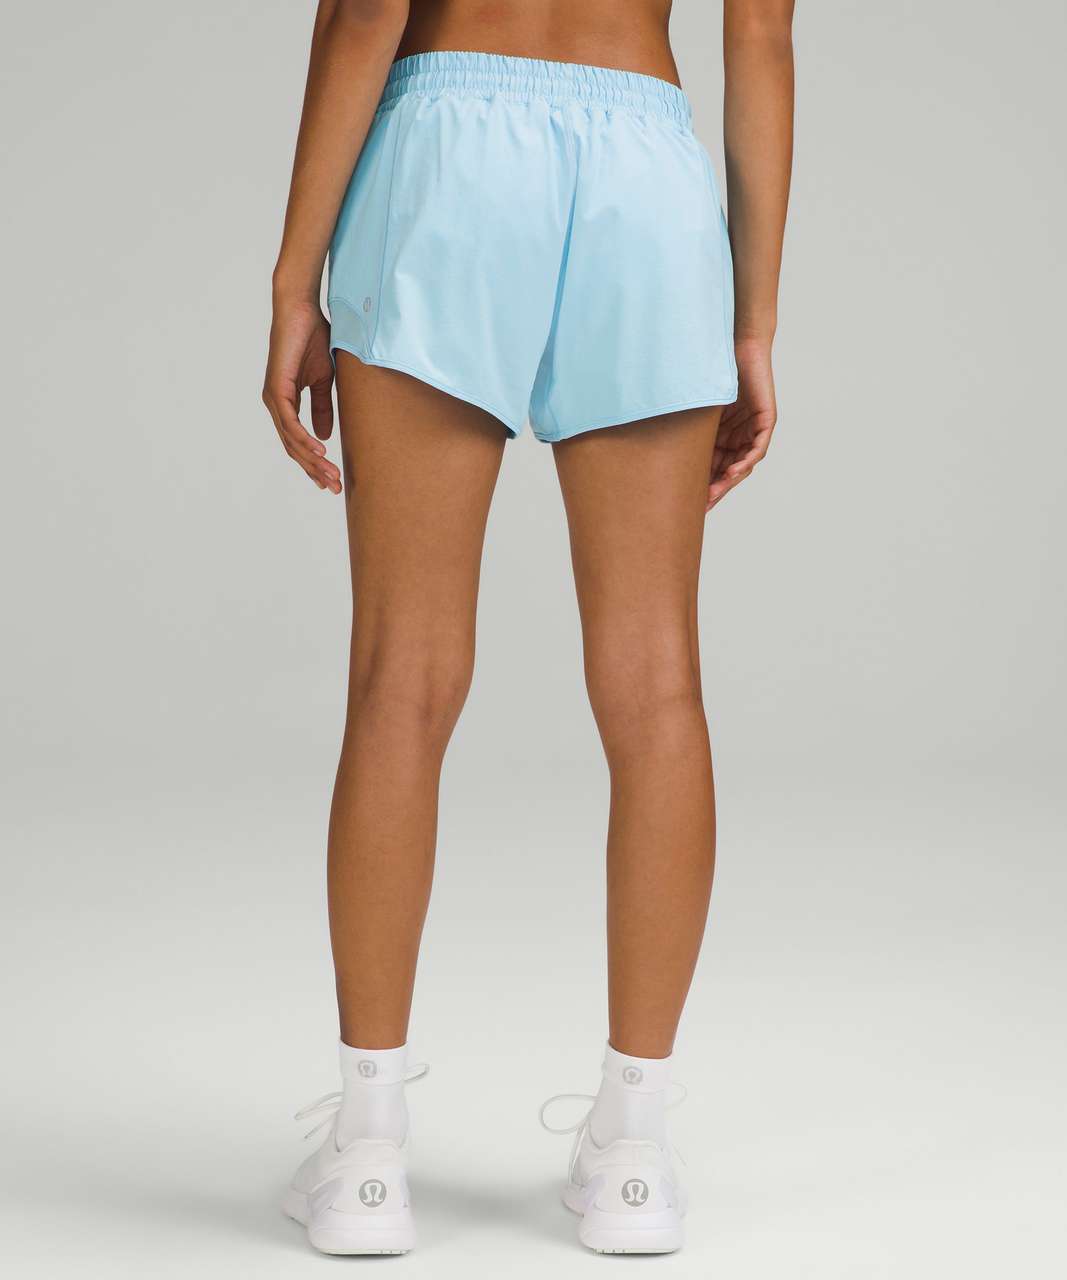 Lululemon shorts size 2 (14”inseam)